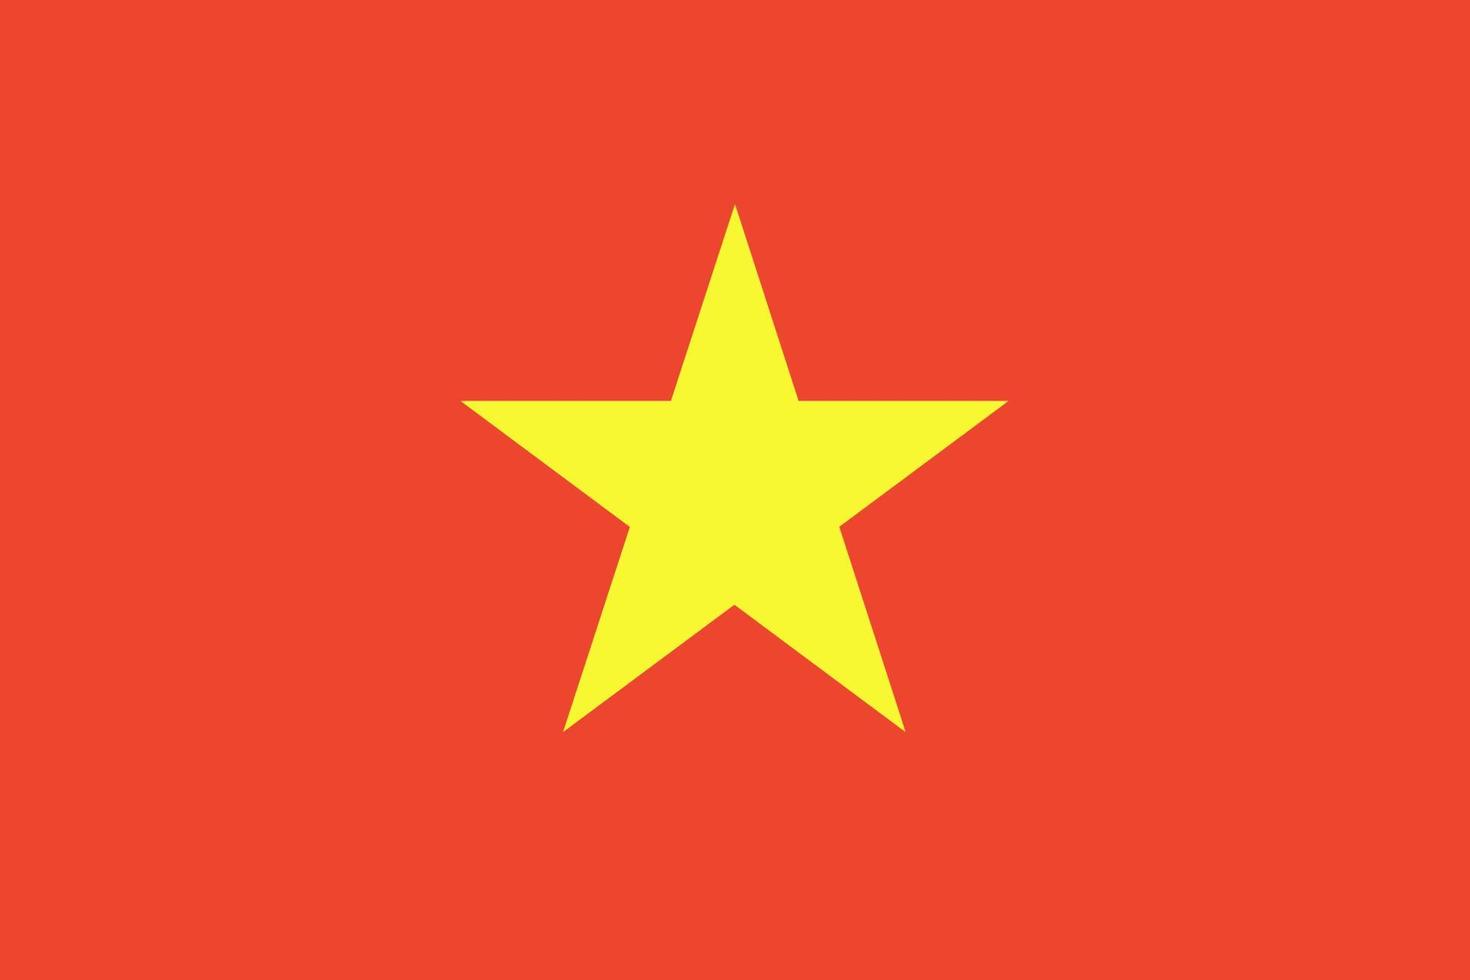 bandiera del vietnam. colori e proporzioni ufficiali. bandiera nazionale del vietnam. vettore